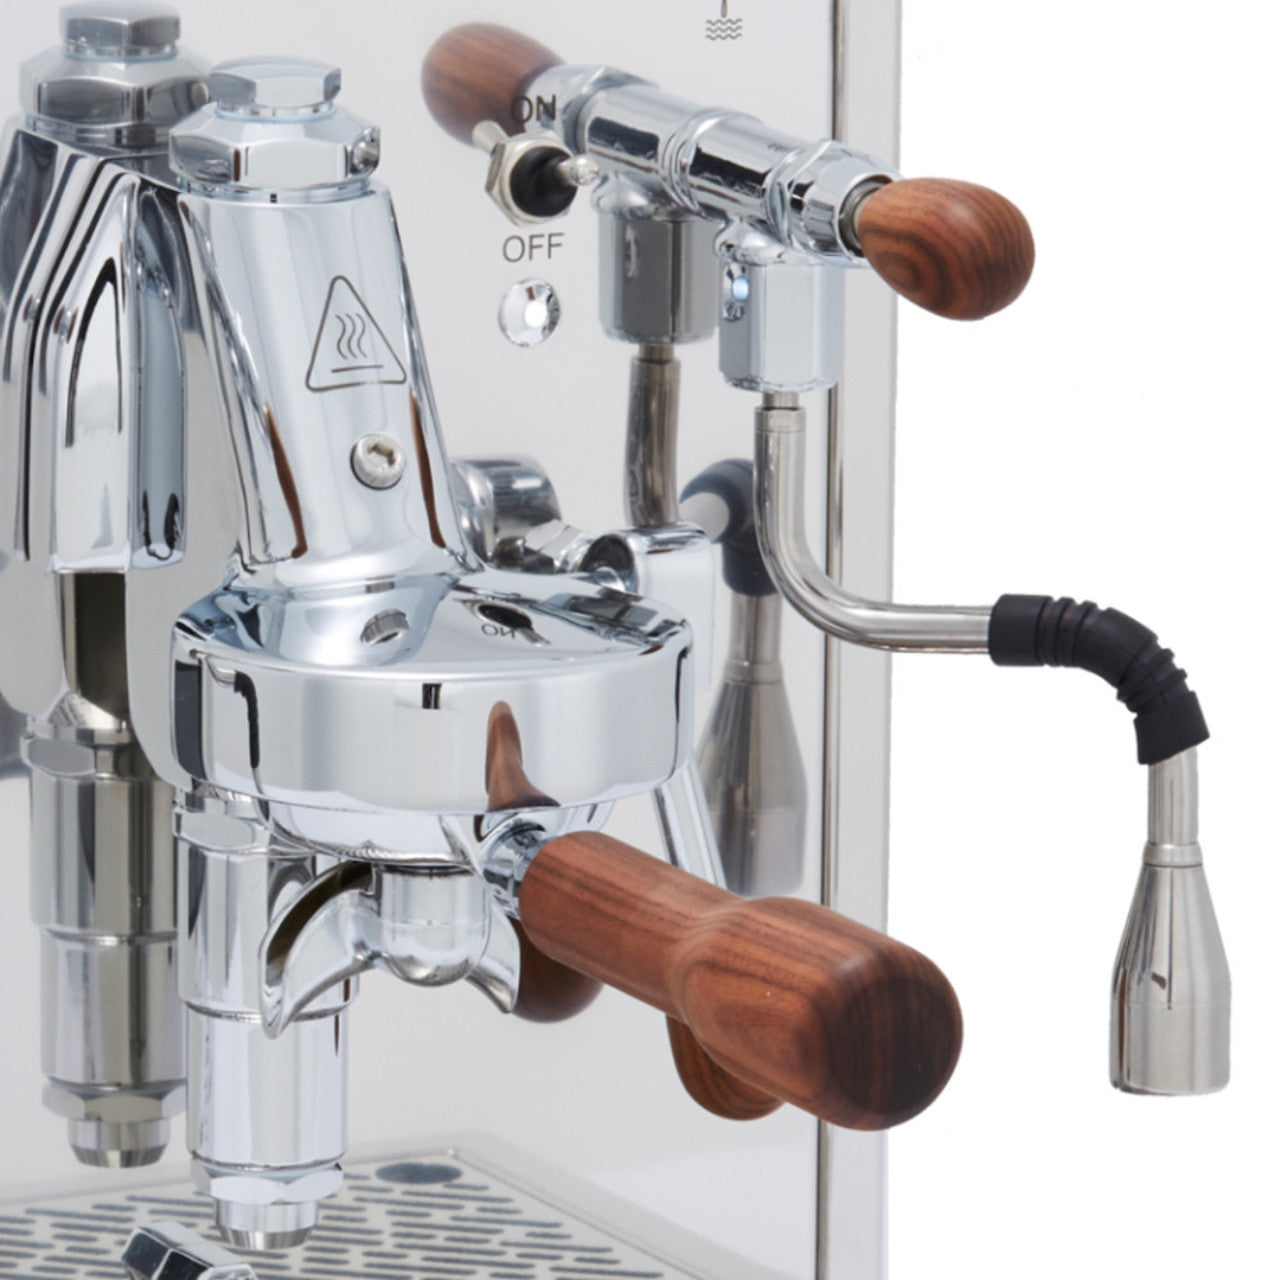 Bezzera Duo e61 Double Boiler PID 0.45/1.0 L Rotary Pump Espresso Coffee Machine